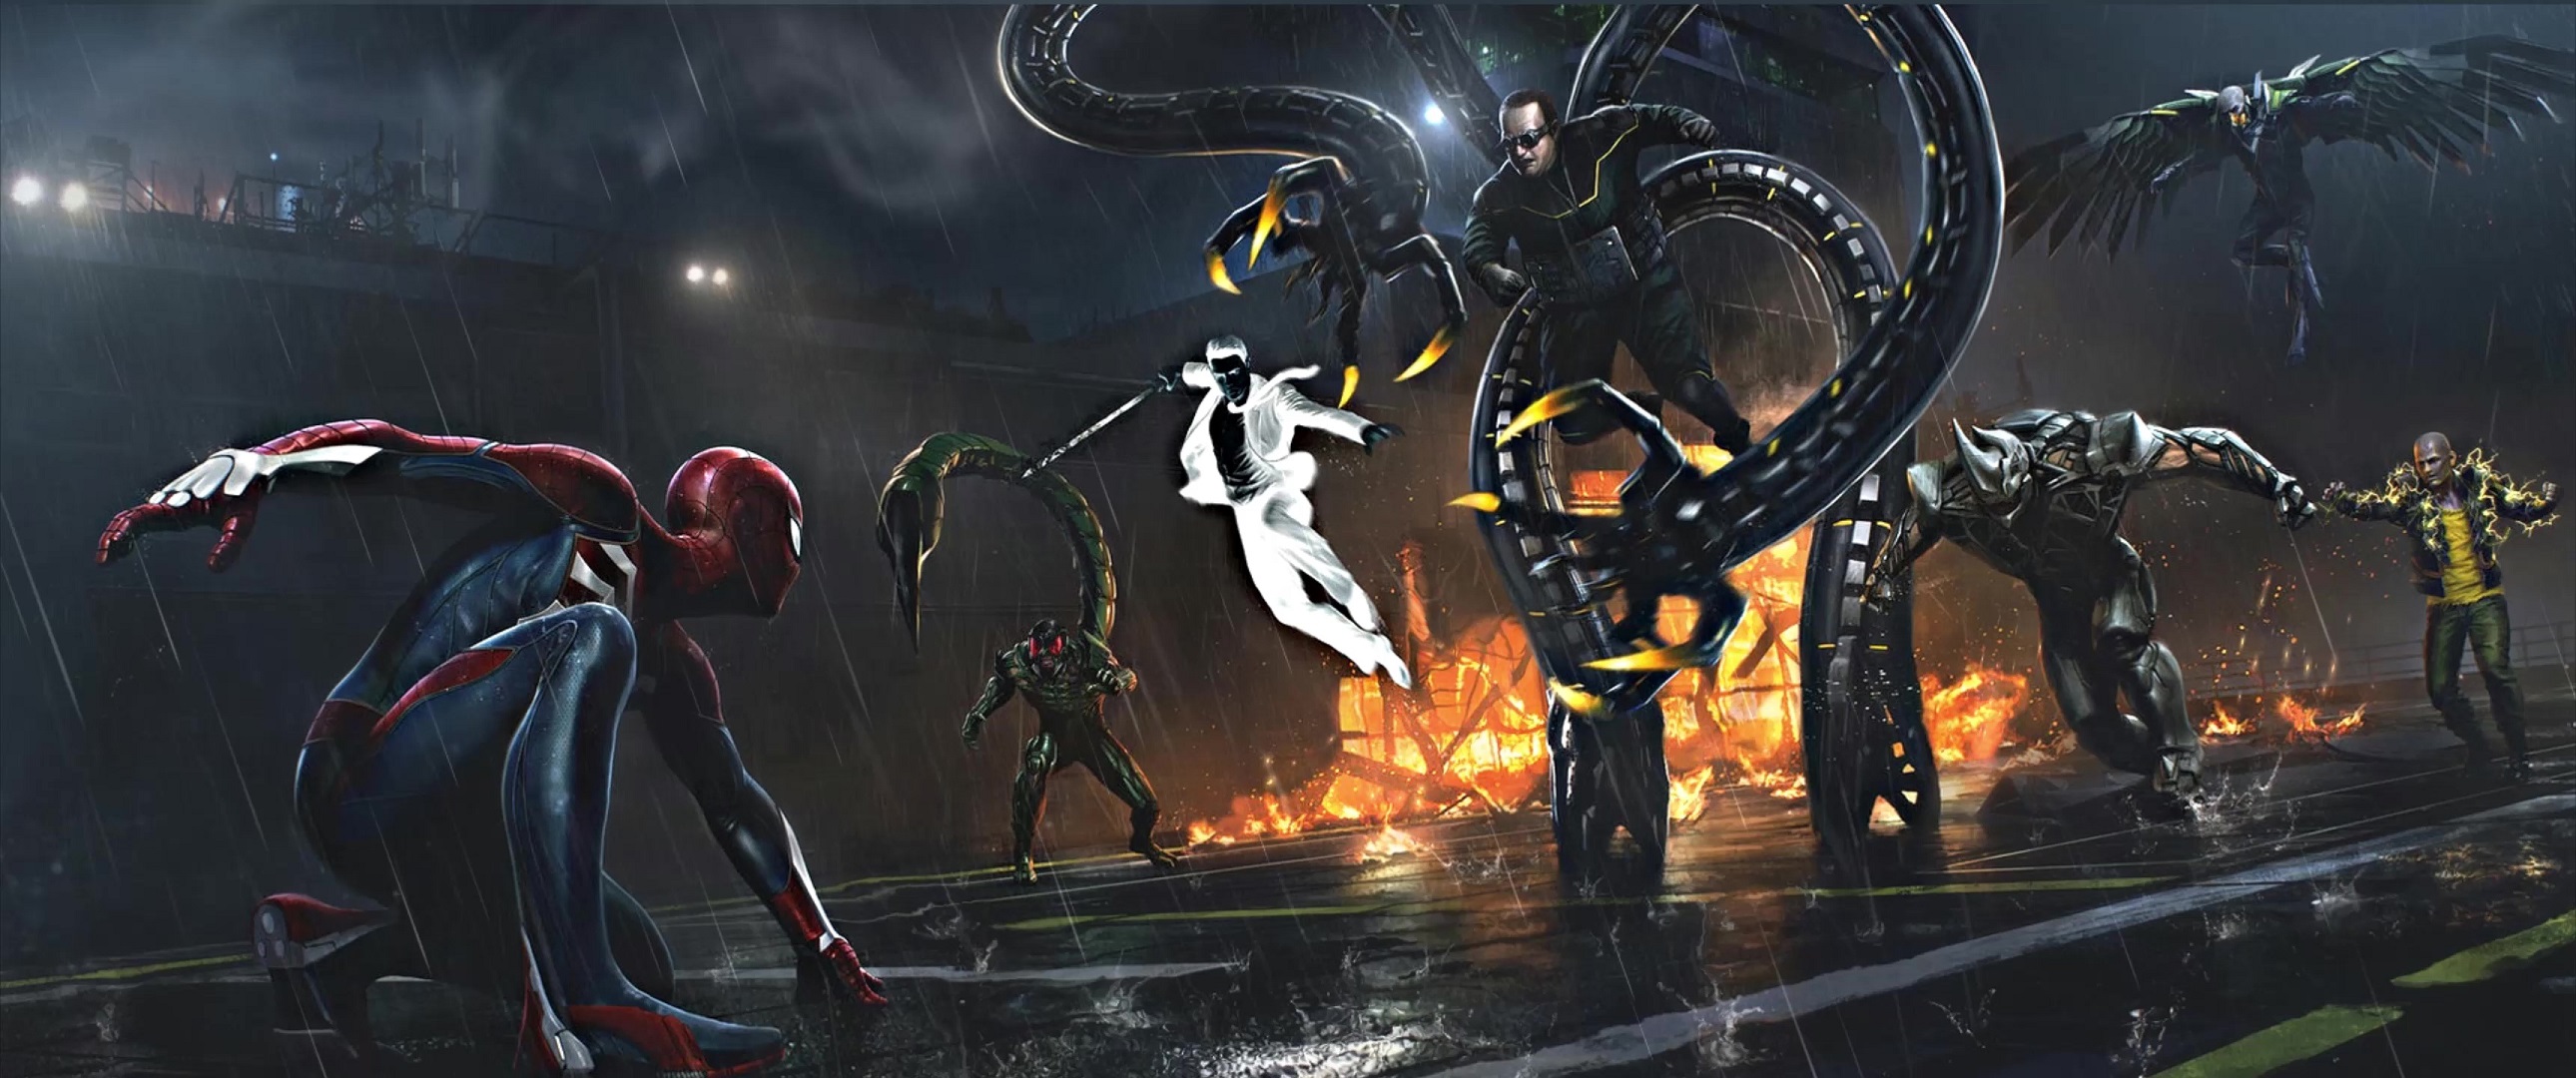 Spider Man Vs Sinister Six Marvel's Spider Man Live Wallpaper - MoeWalls